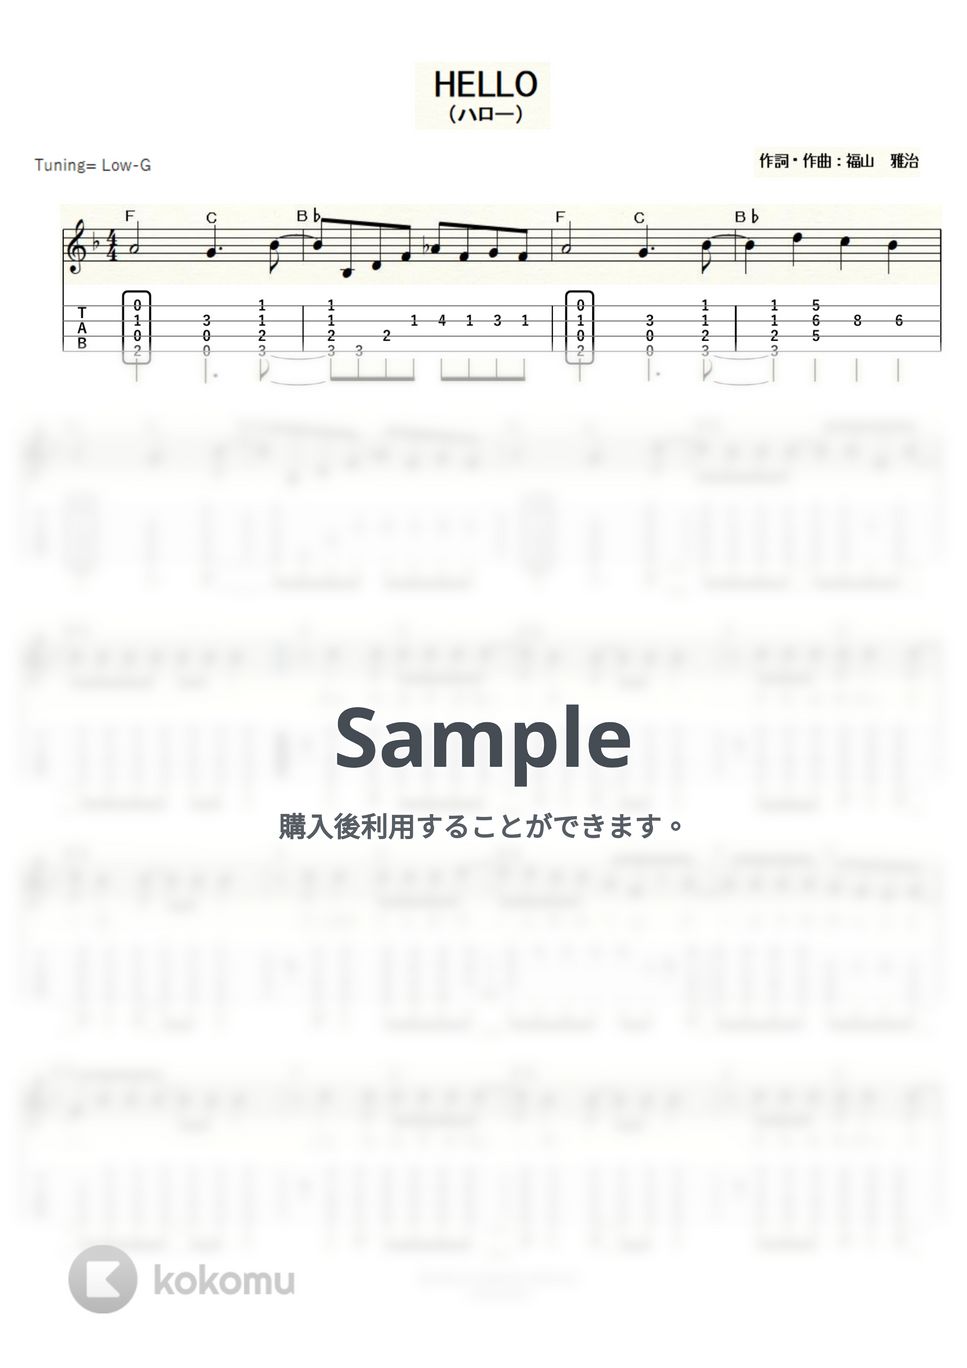 福山雅治 - ＨＥＬＬＯ (ｳｸﾚﾚｿﾛ/Low-G/中級) by ukulelepapa